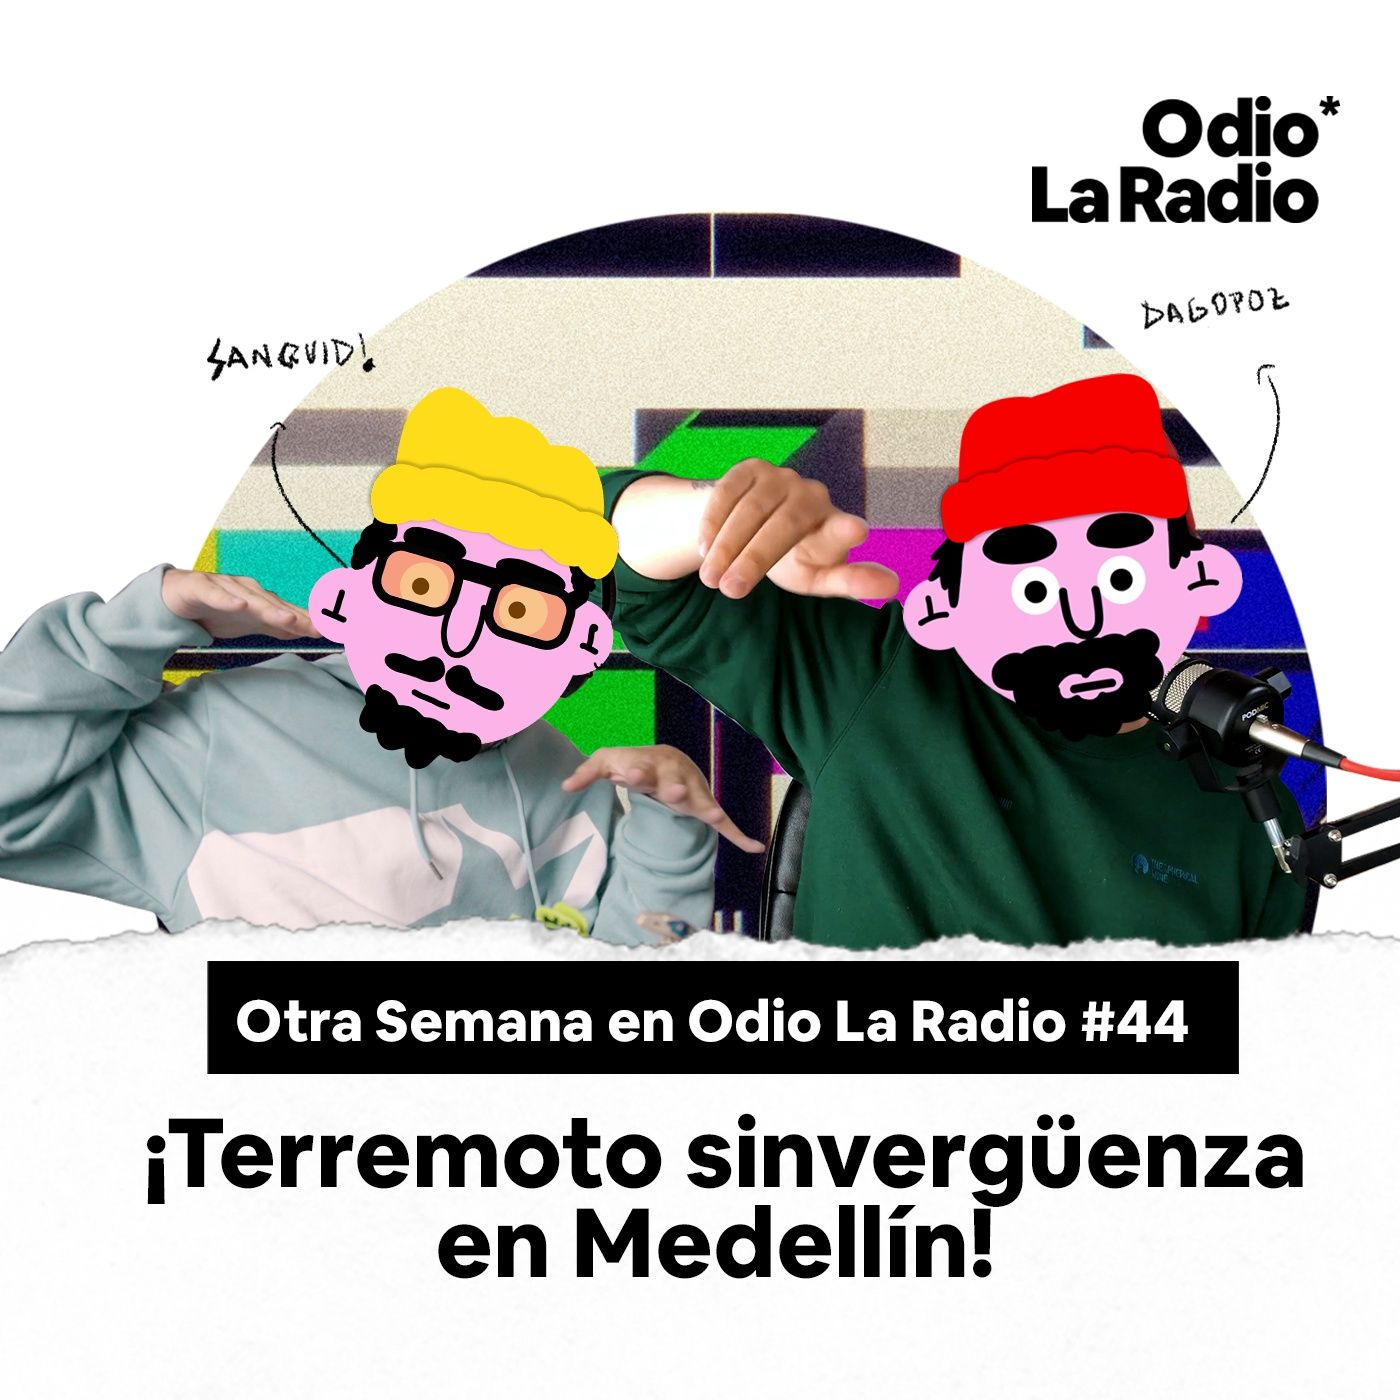 Otra Semana en Odio La Radio #44: ¡Terremoto sinverguenza en Medellín!